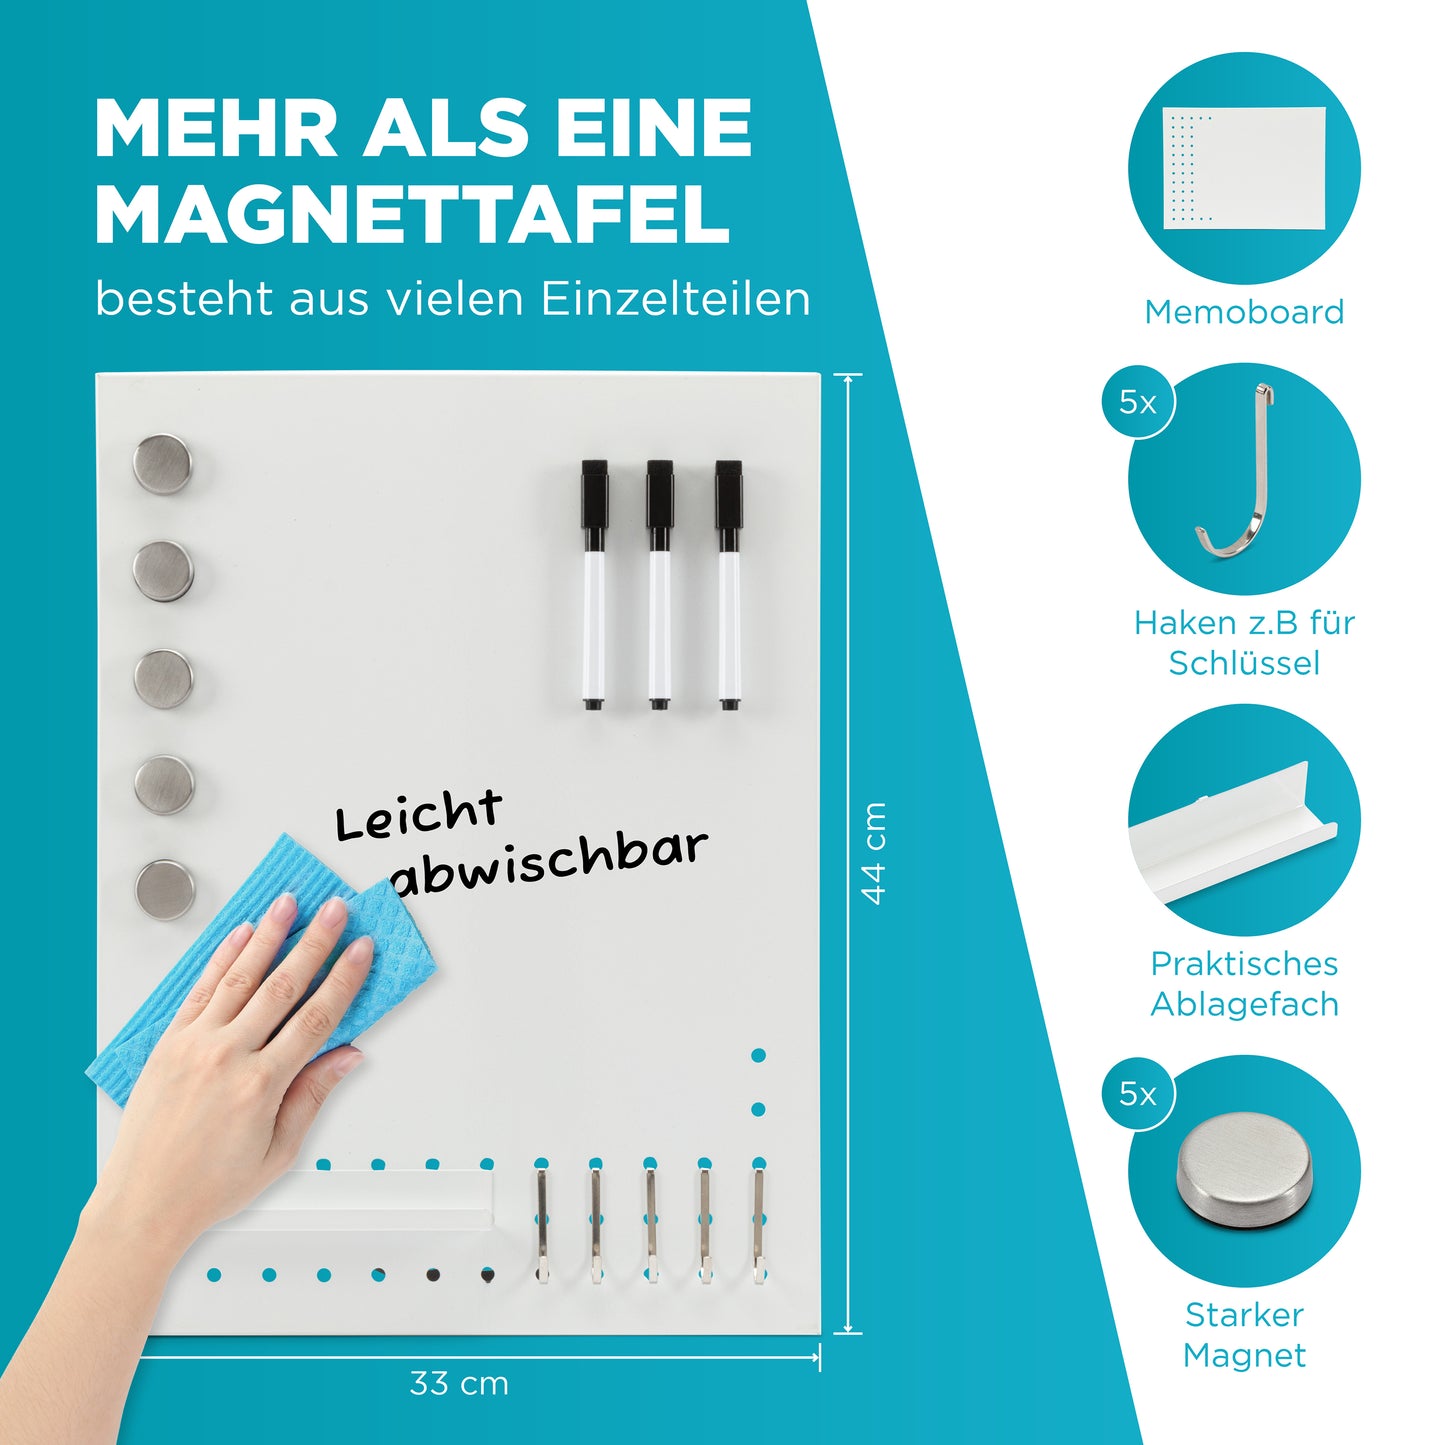 All-in-One Magnettafel - Kombiniert Whiteboard, Memoboard und Magnettafel